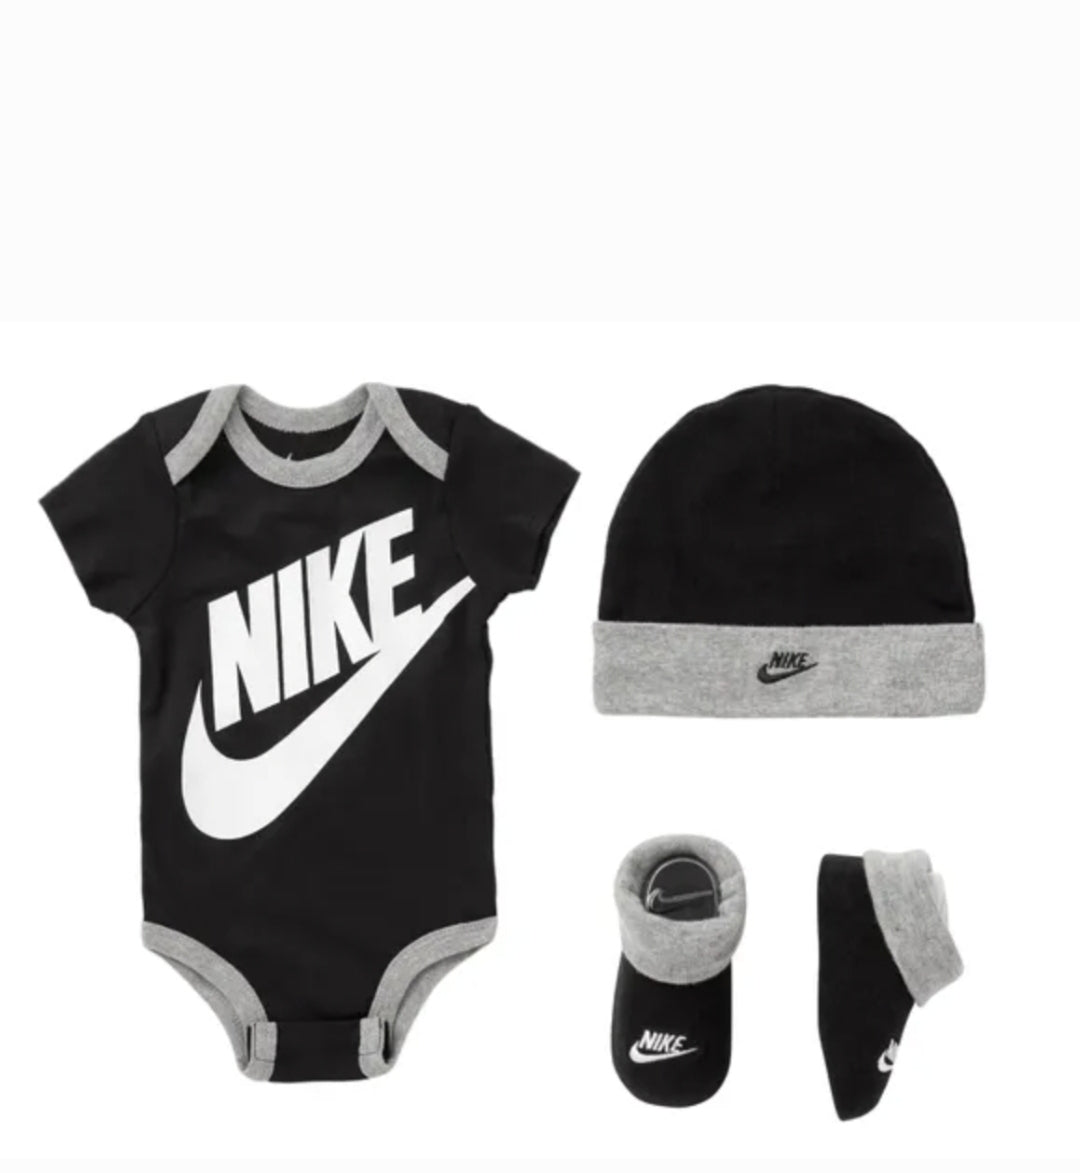 Nike Baby Box Futura Black / Gray